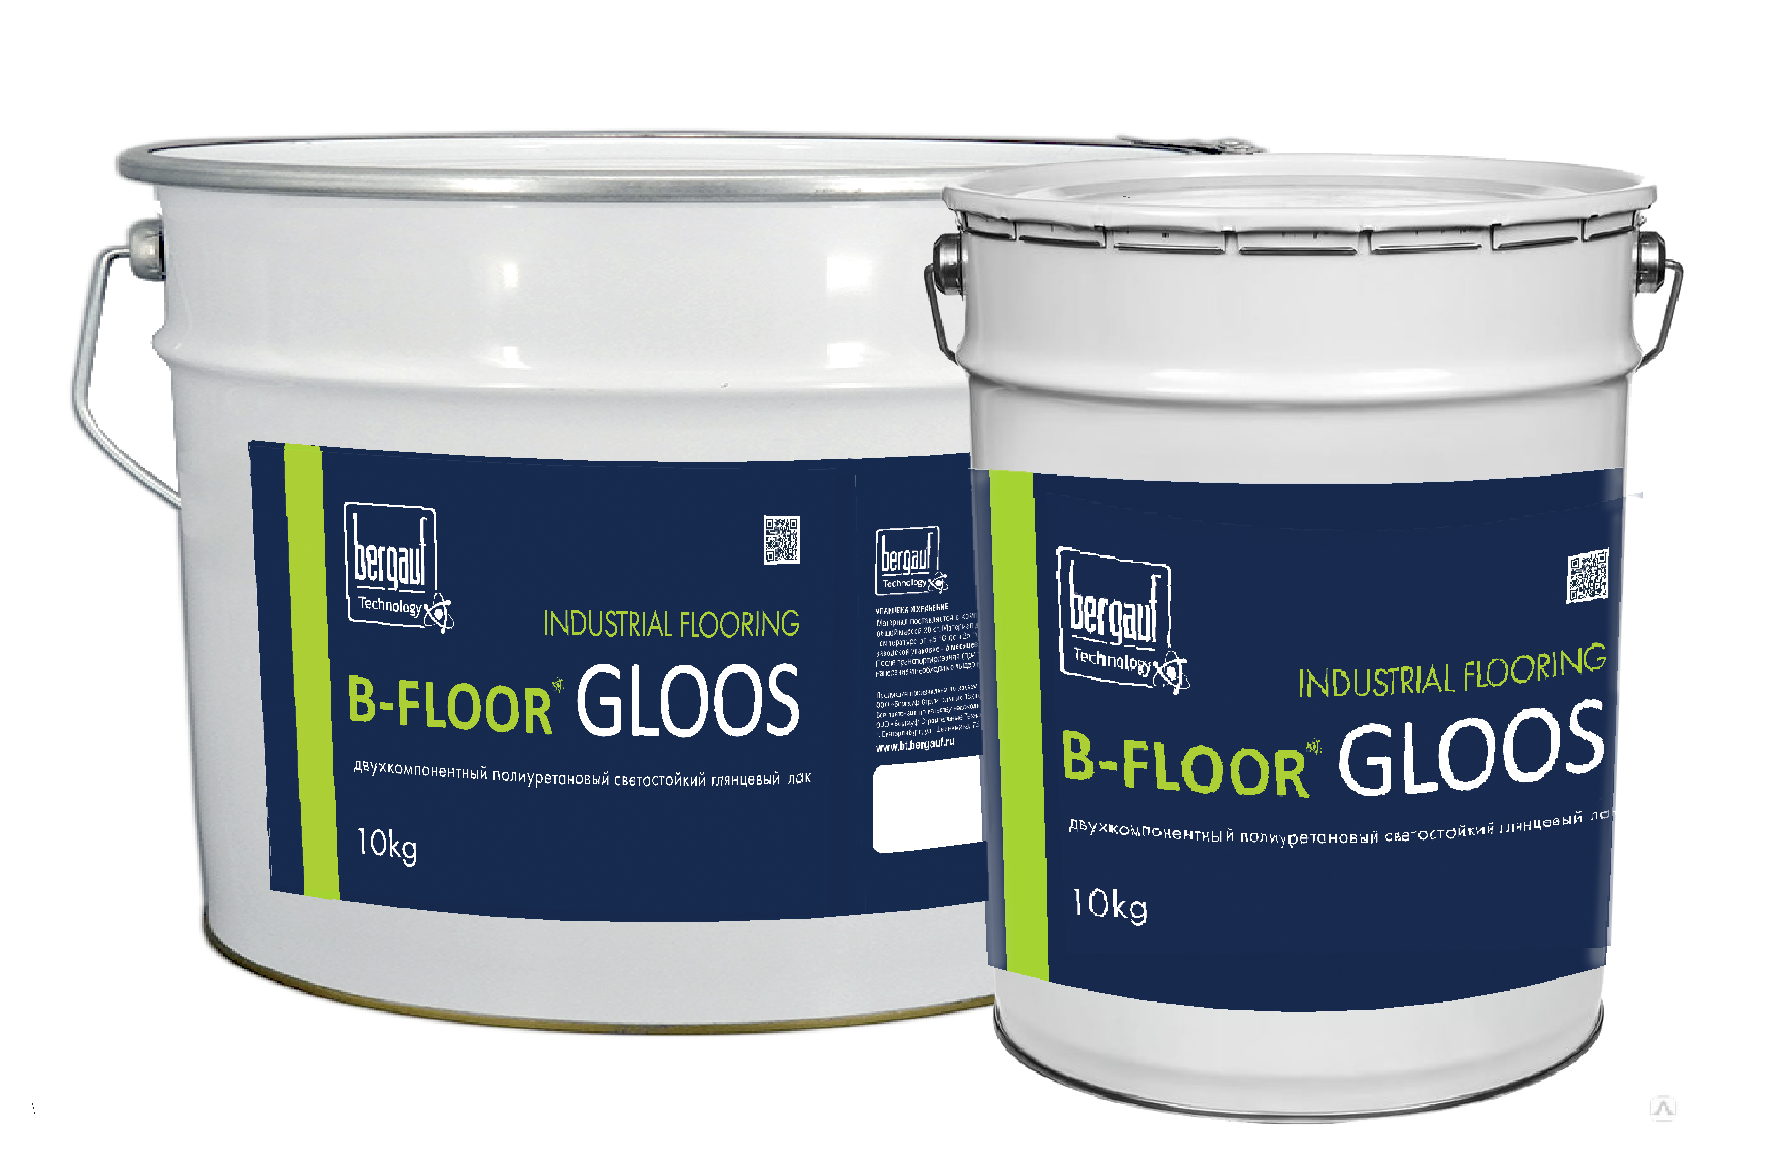 B-FLOOR GLOOS - Двухкомпонентный полиуретановый светостойкий глянцевый лак